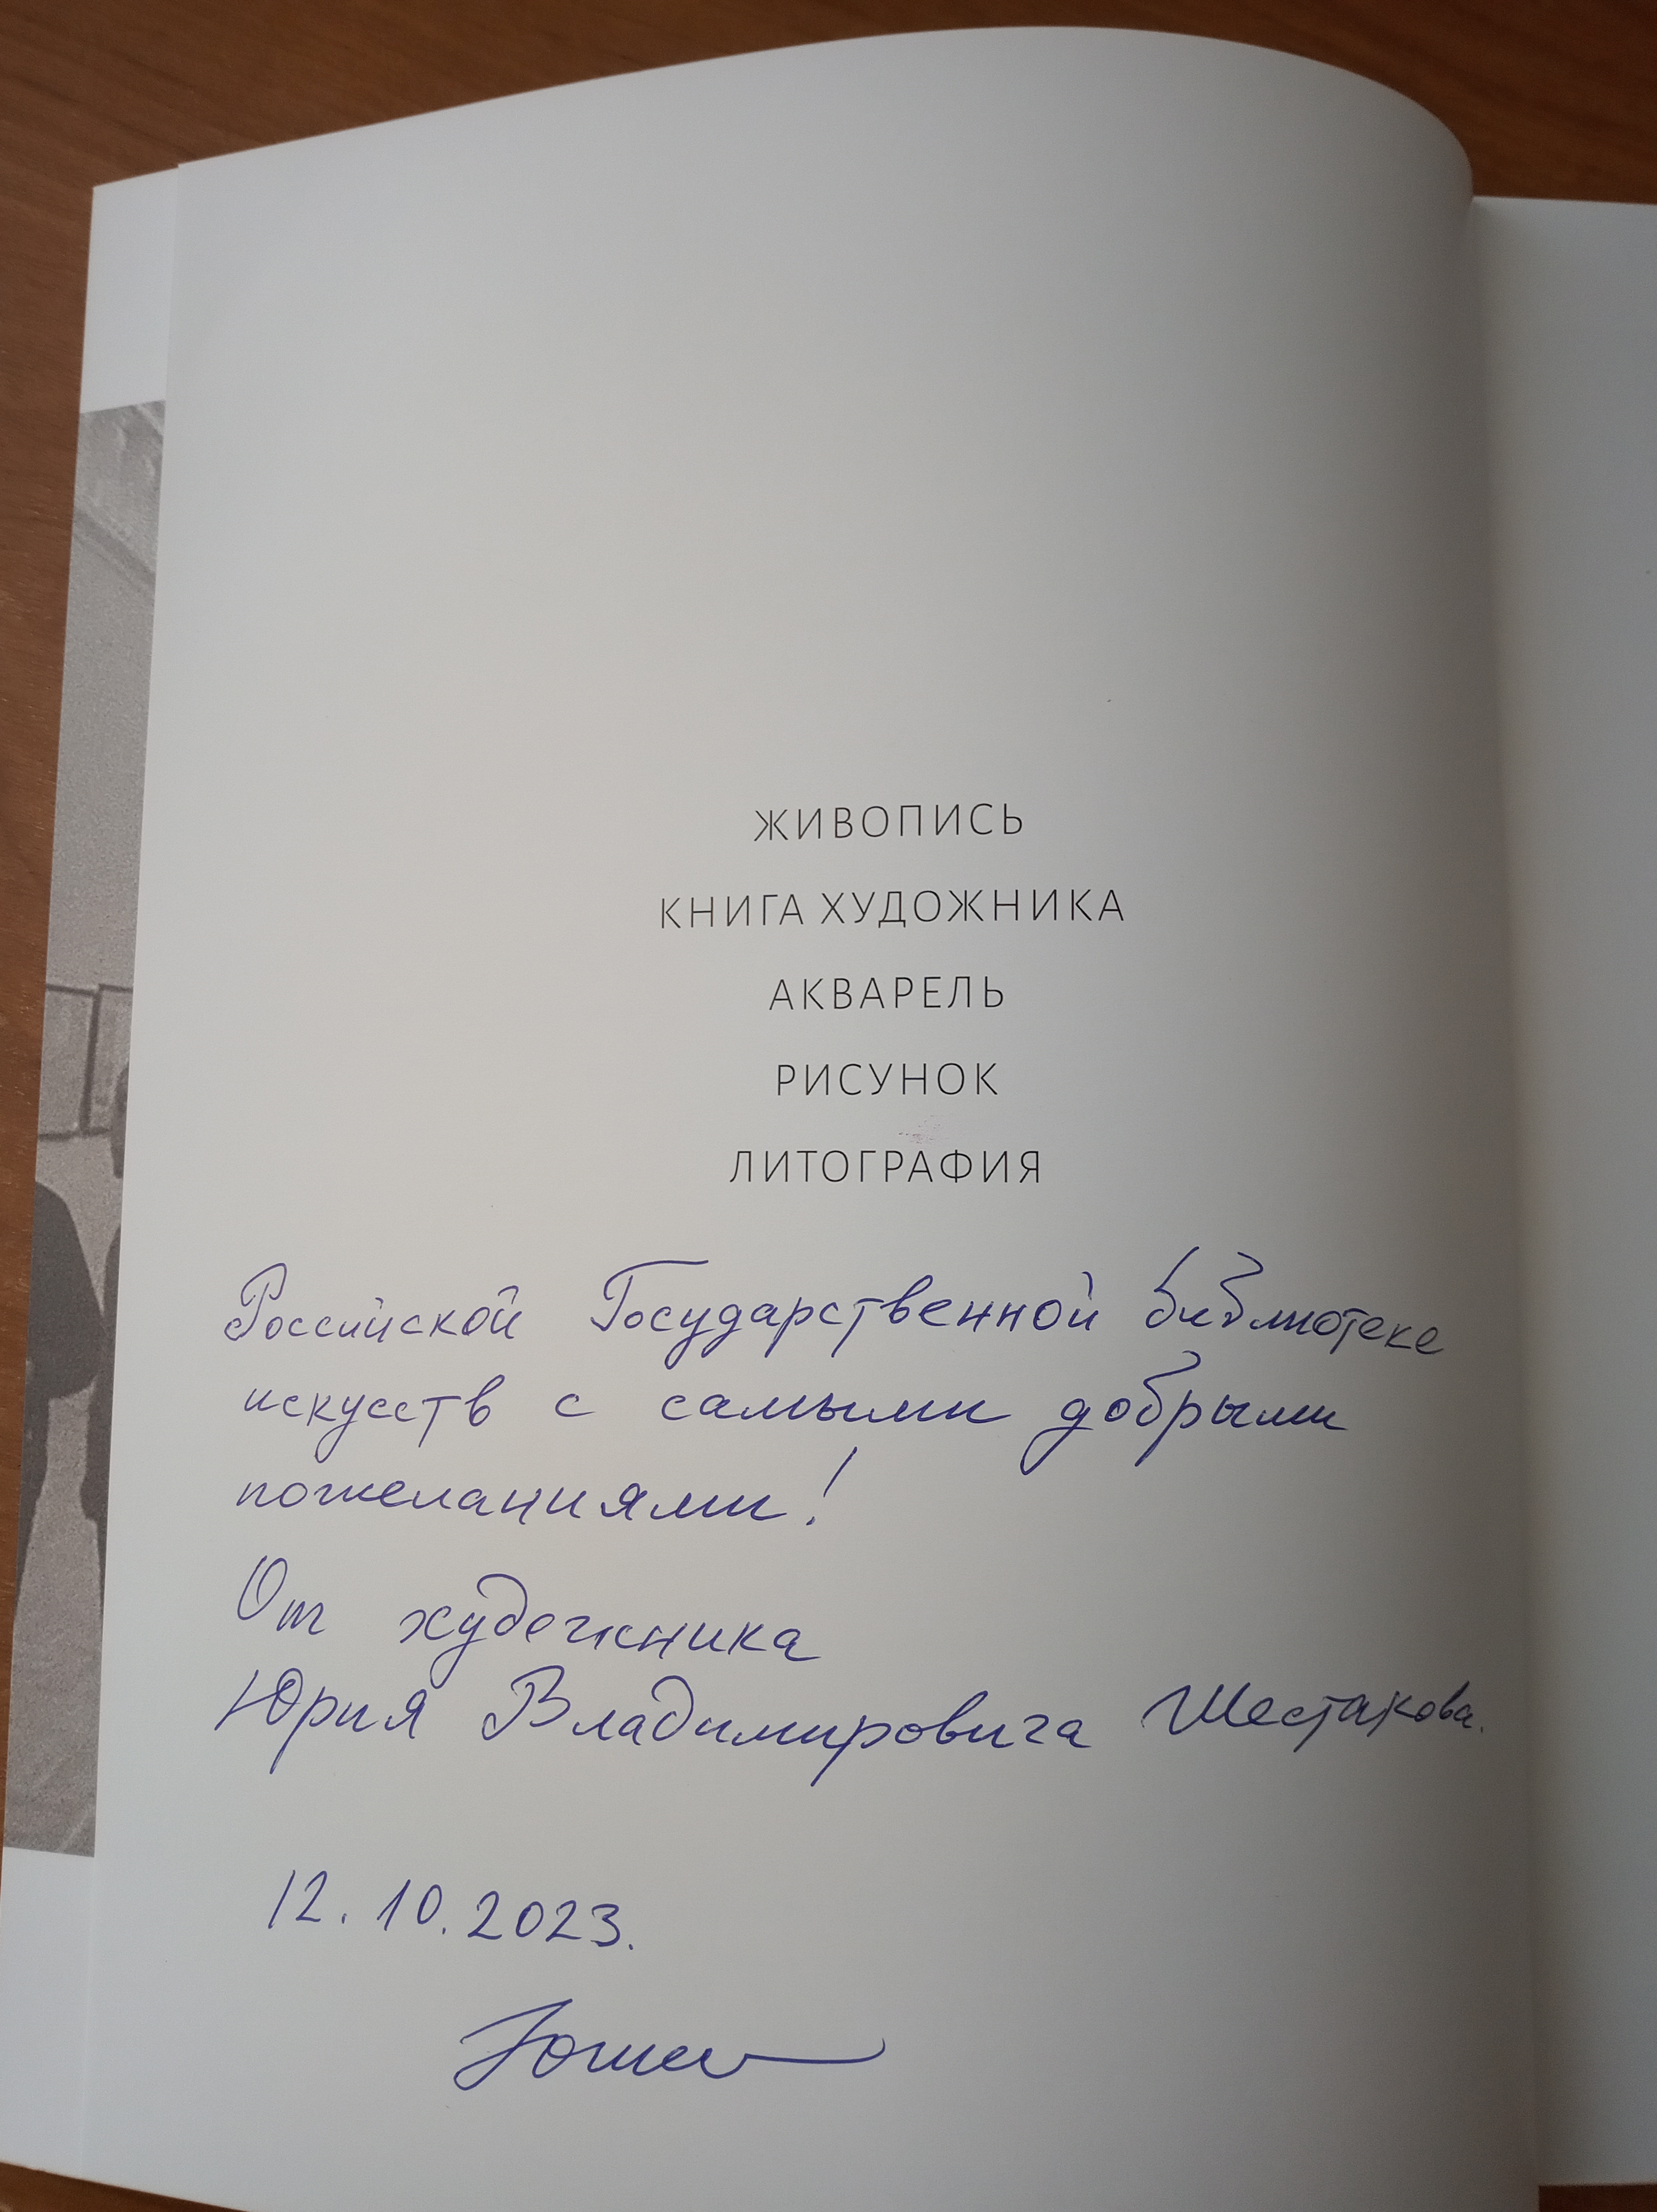 Российская государственная библиотека искусств получила в дар уникальный номерной экземпляр каталога